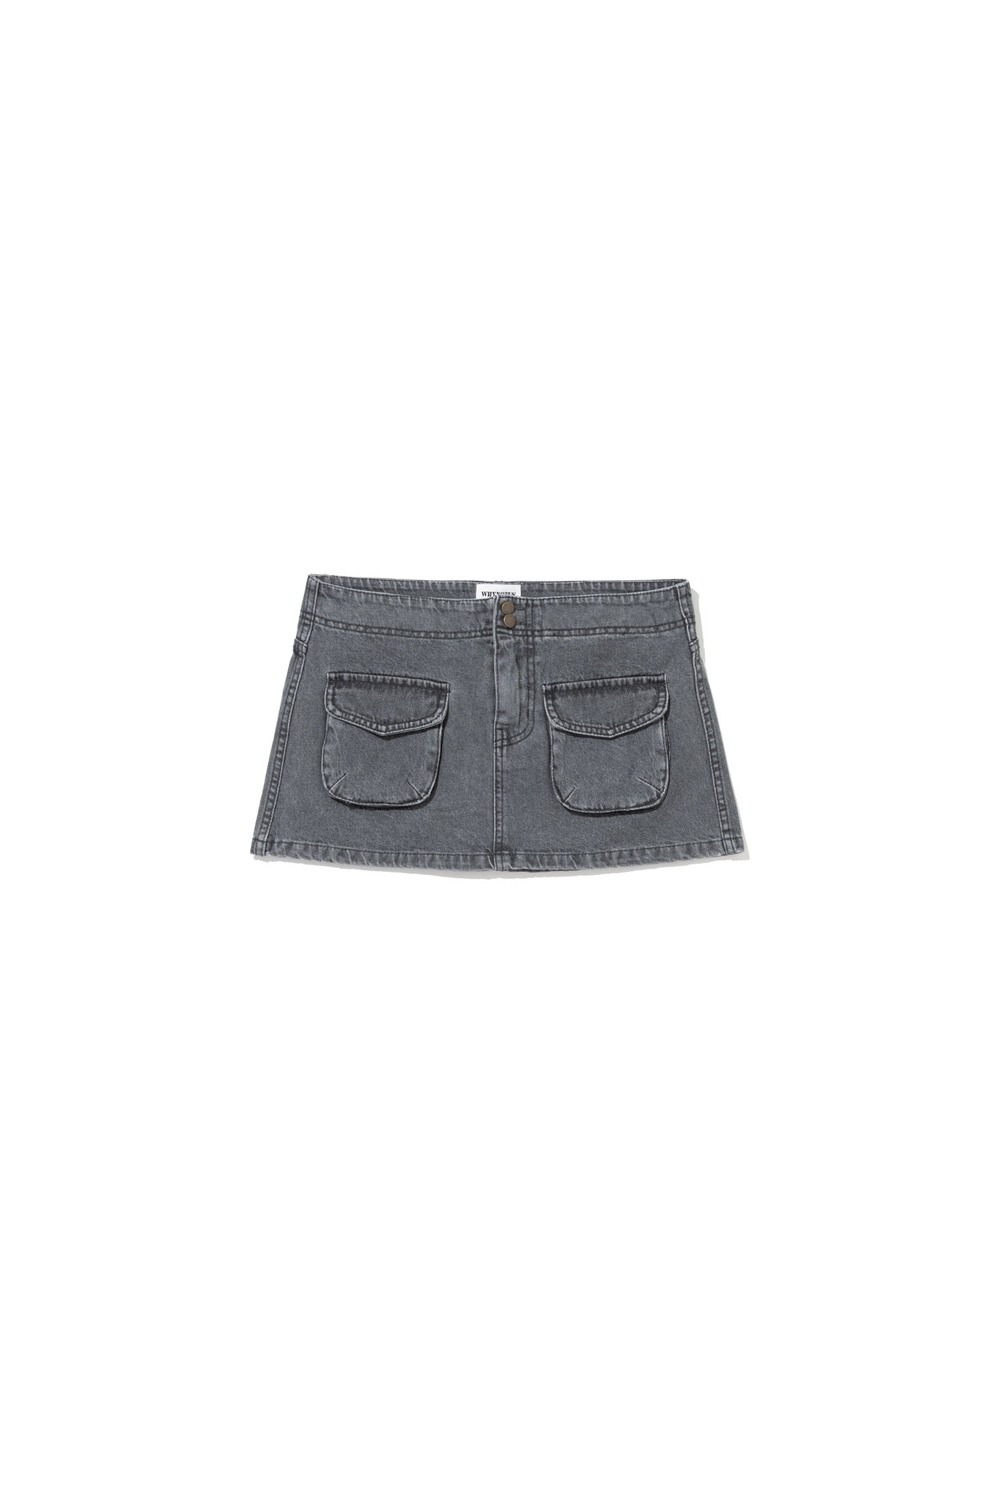 FW 22 pocket denim mini skirt - black